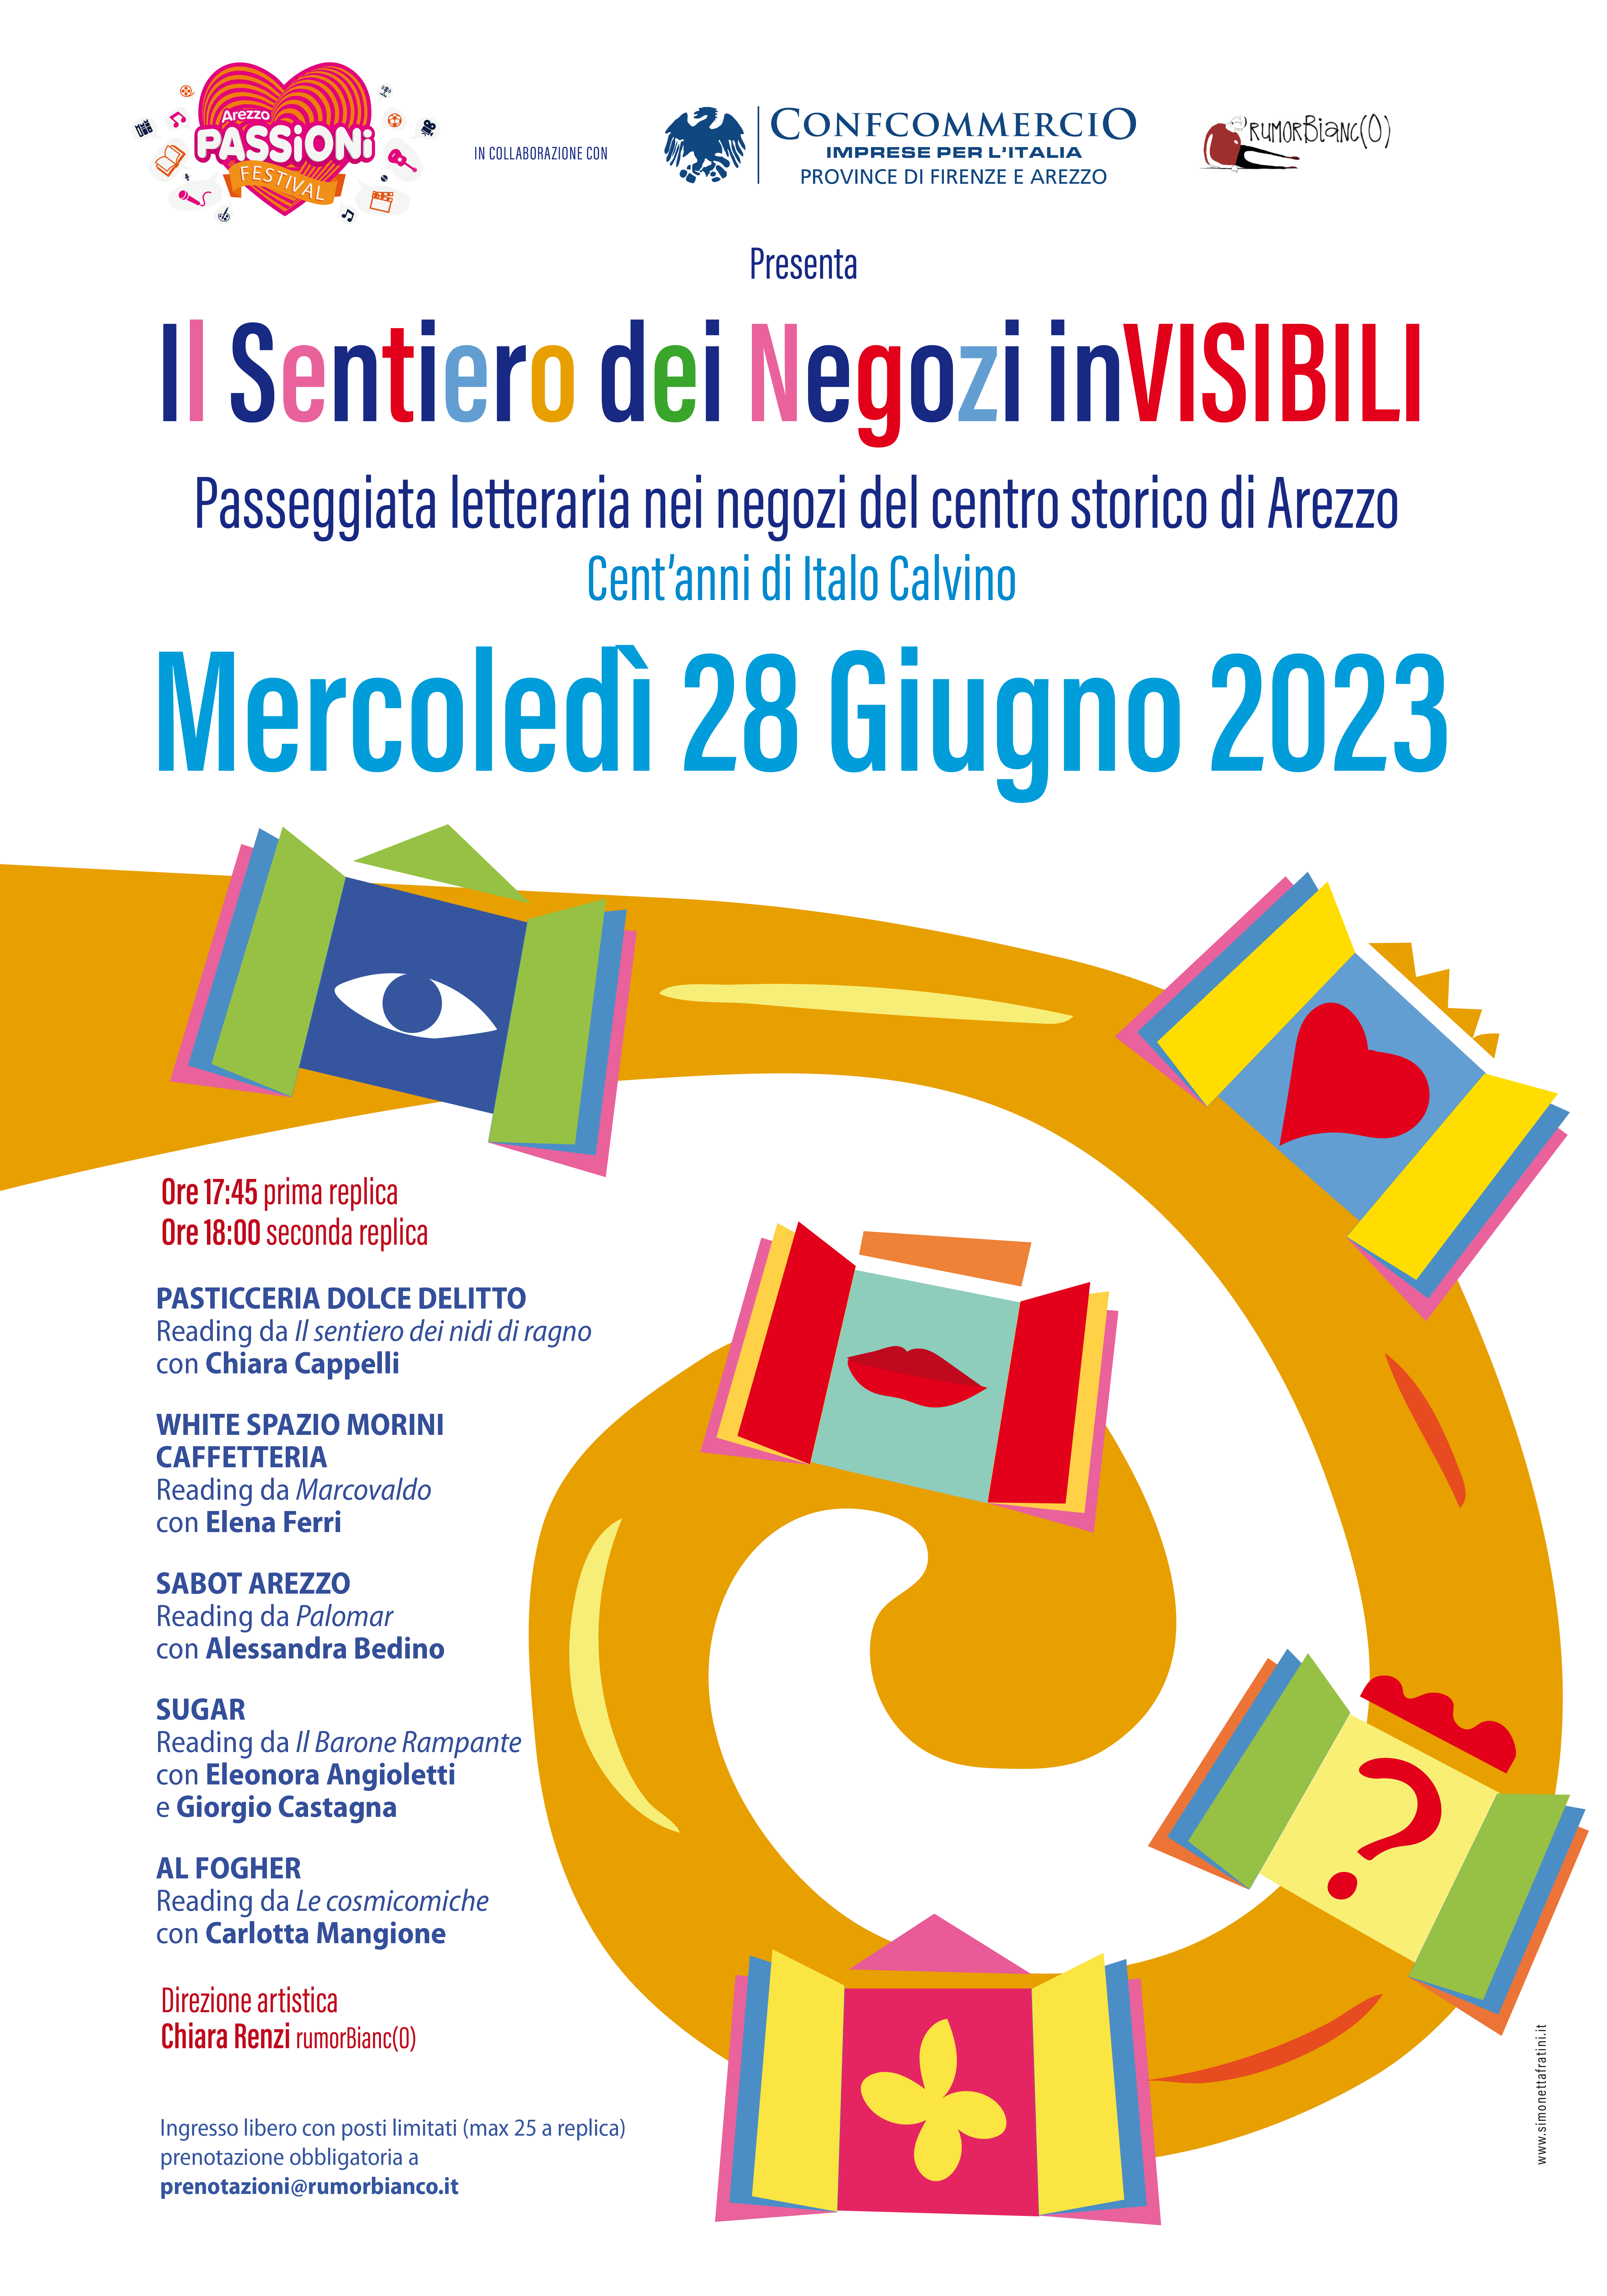 Manifesto 70x100 iniziativa "Il sentiero dei negozi invisibili" a cura di Rumorbianco 2023 Arezzo